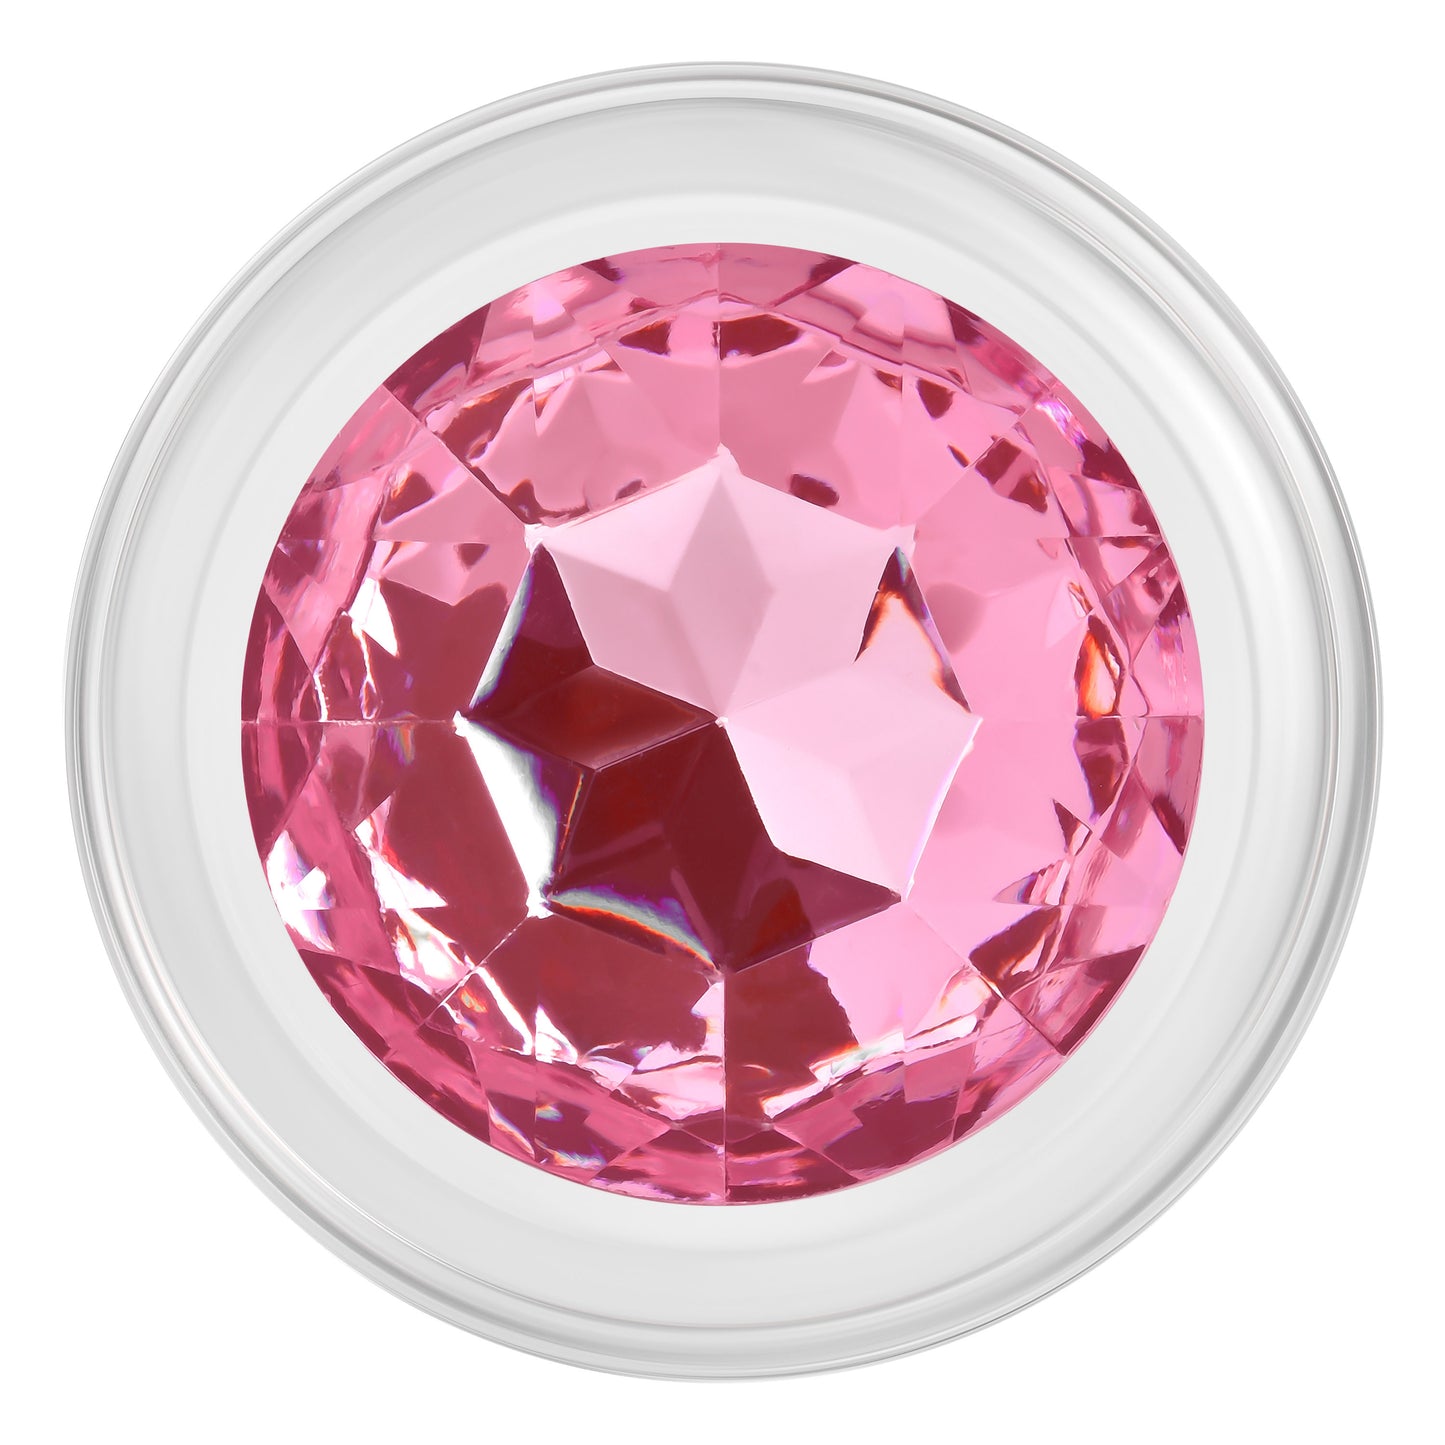 Pink Gem Glass Plug - Large - Pink